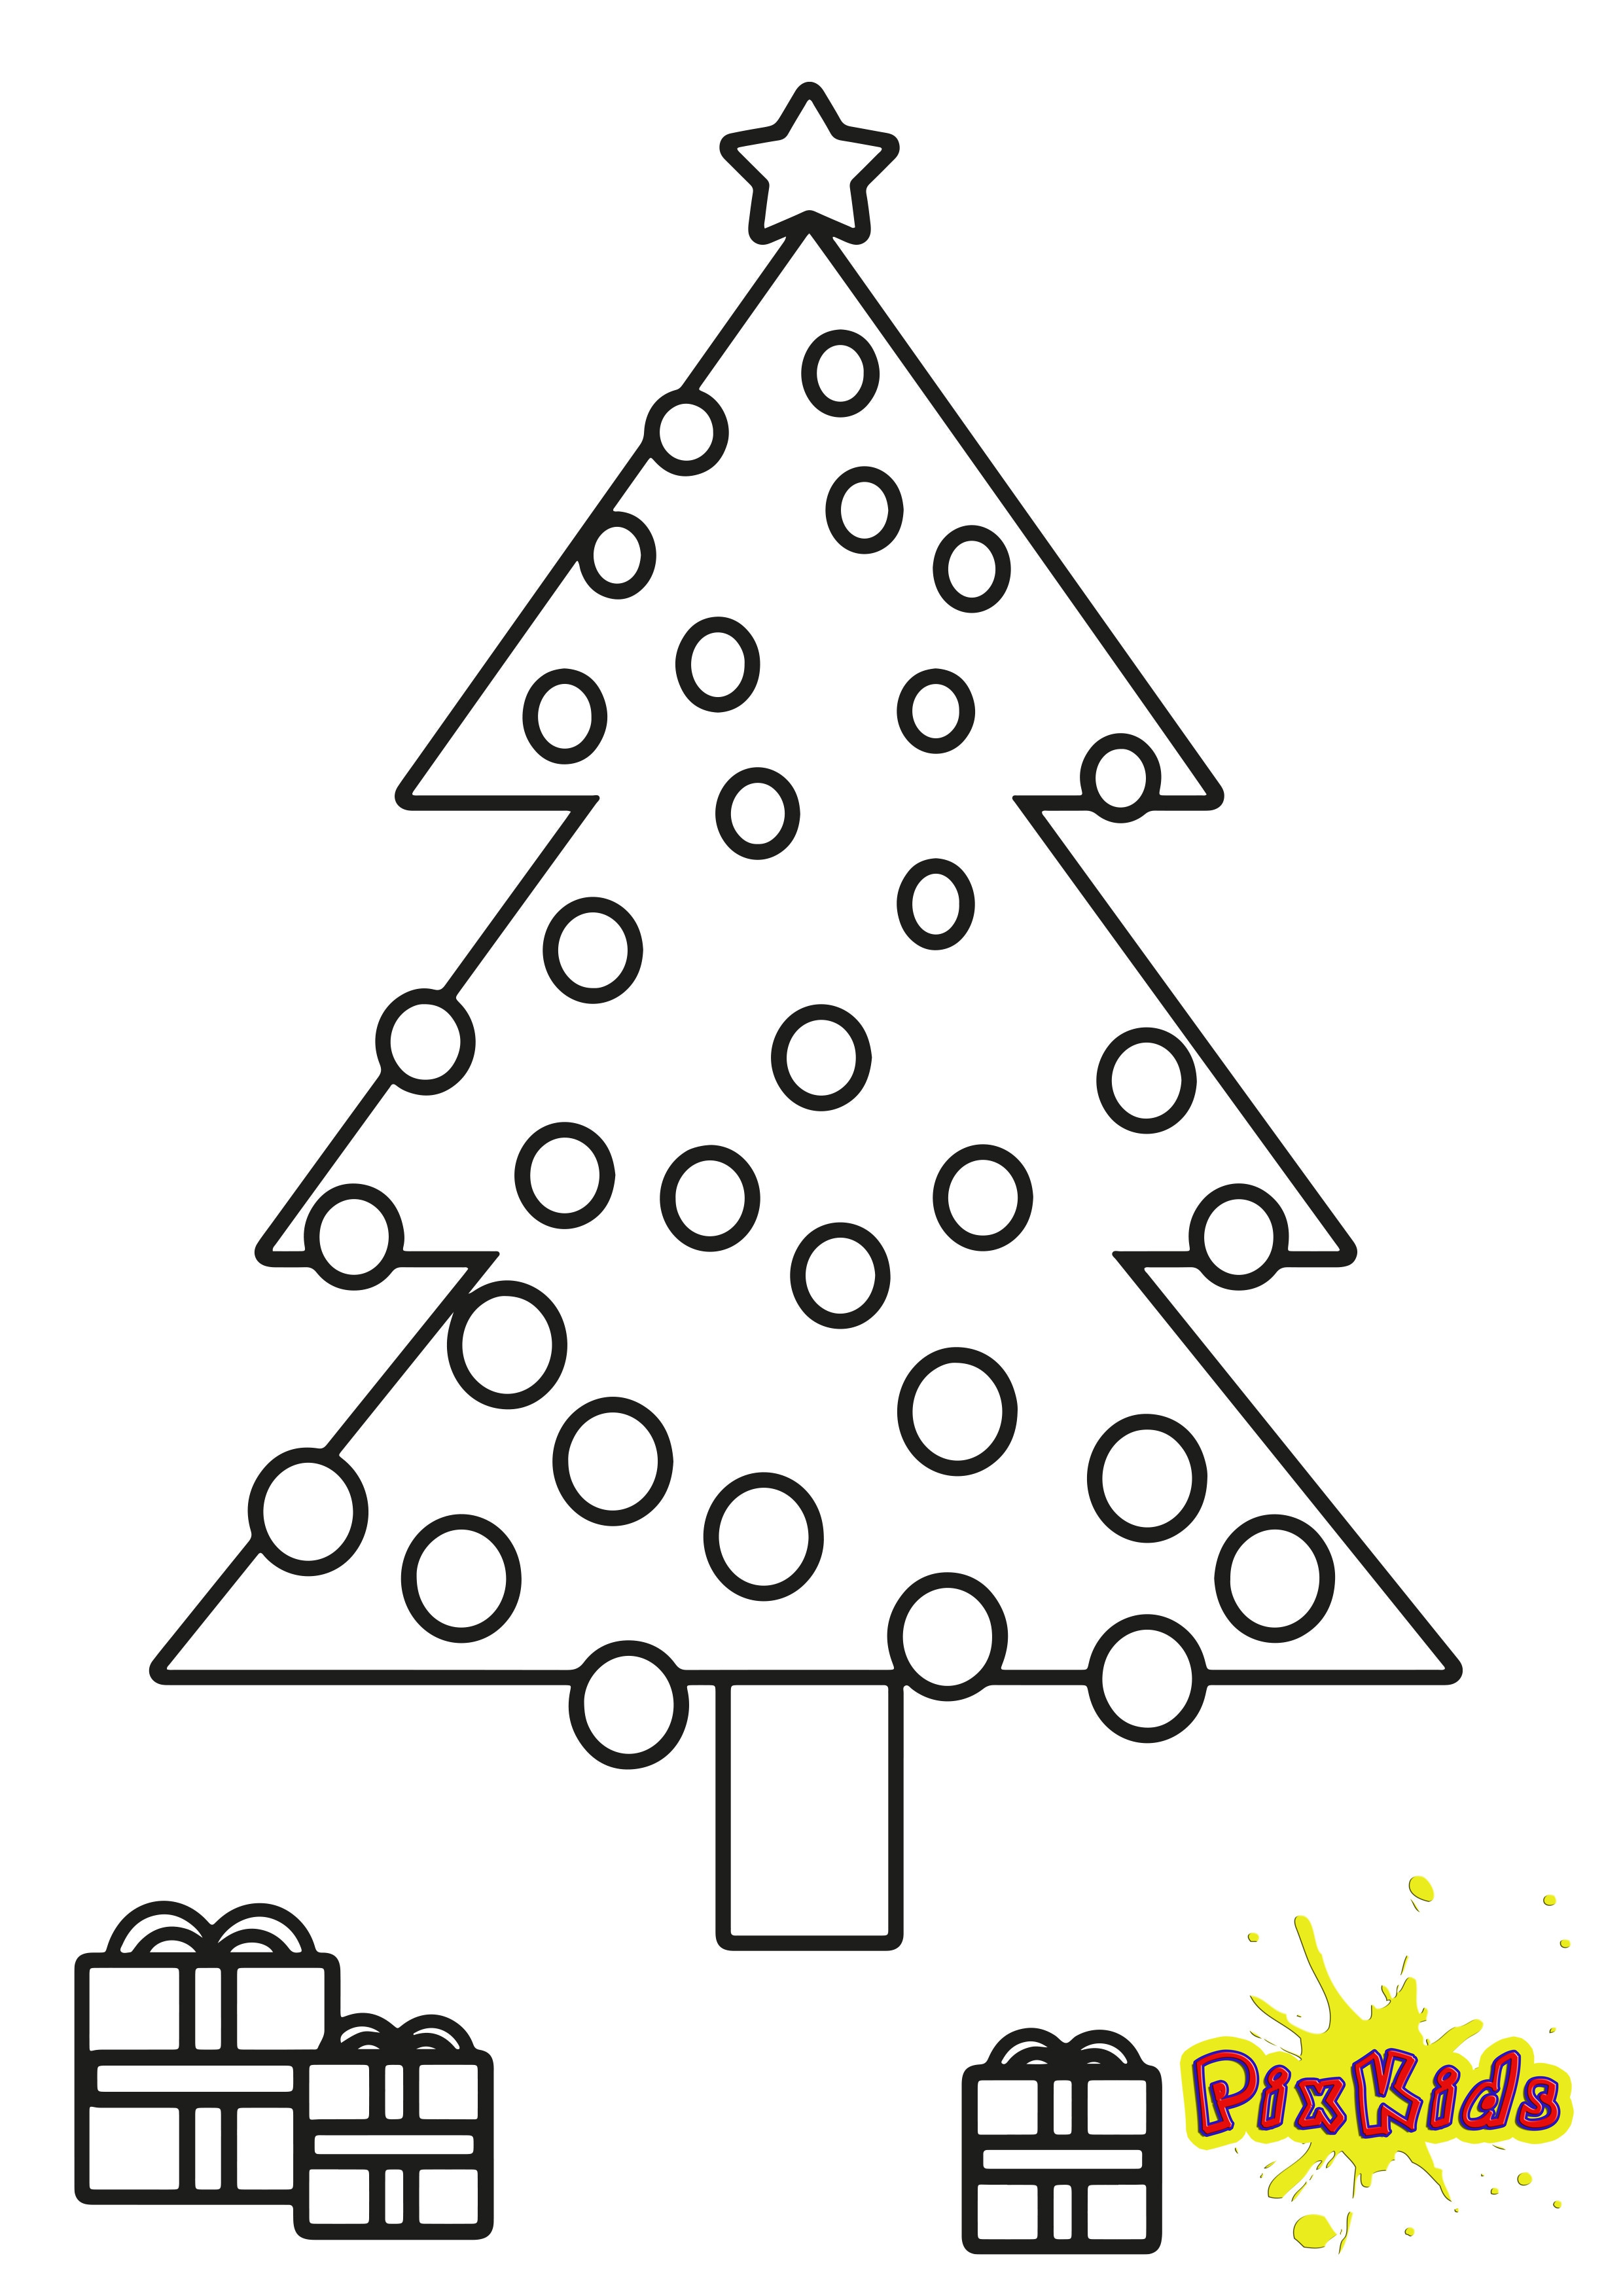 Ausmalbilder Weihnachtsbaum Mit Geschenken
 Ausmalvorlagen kostenlos zum ausdrucken